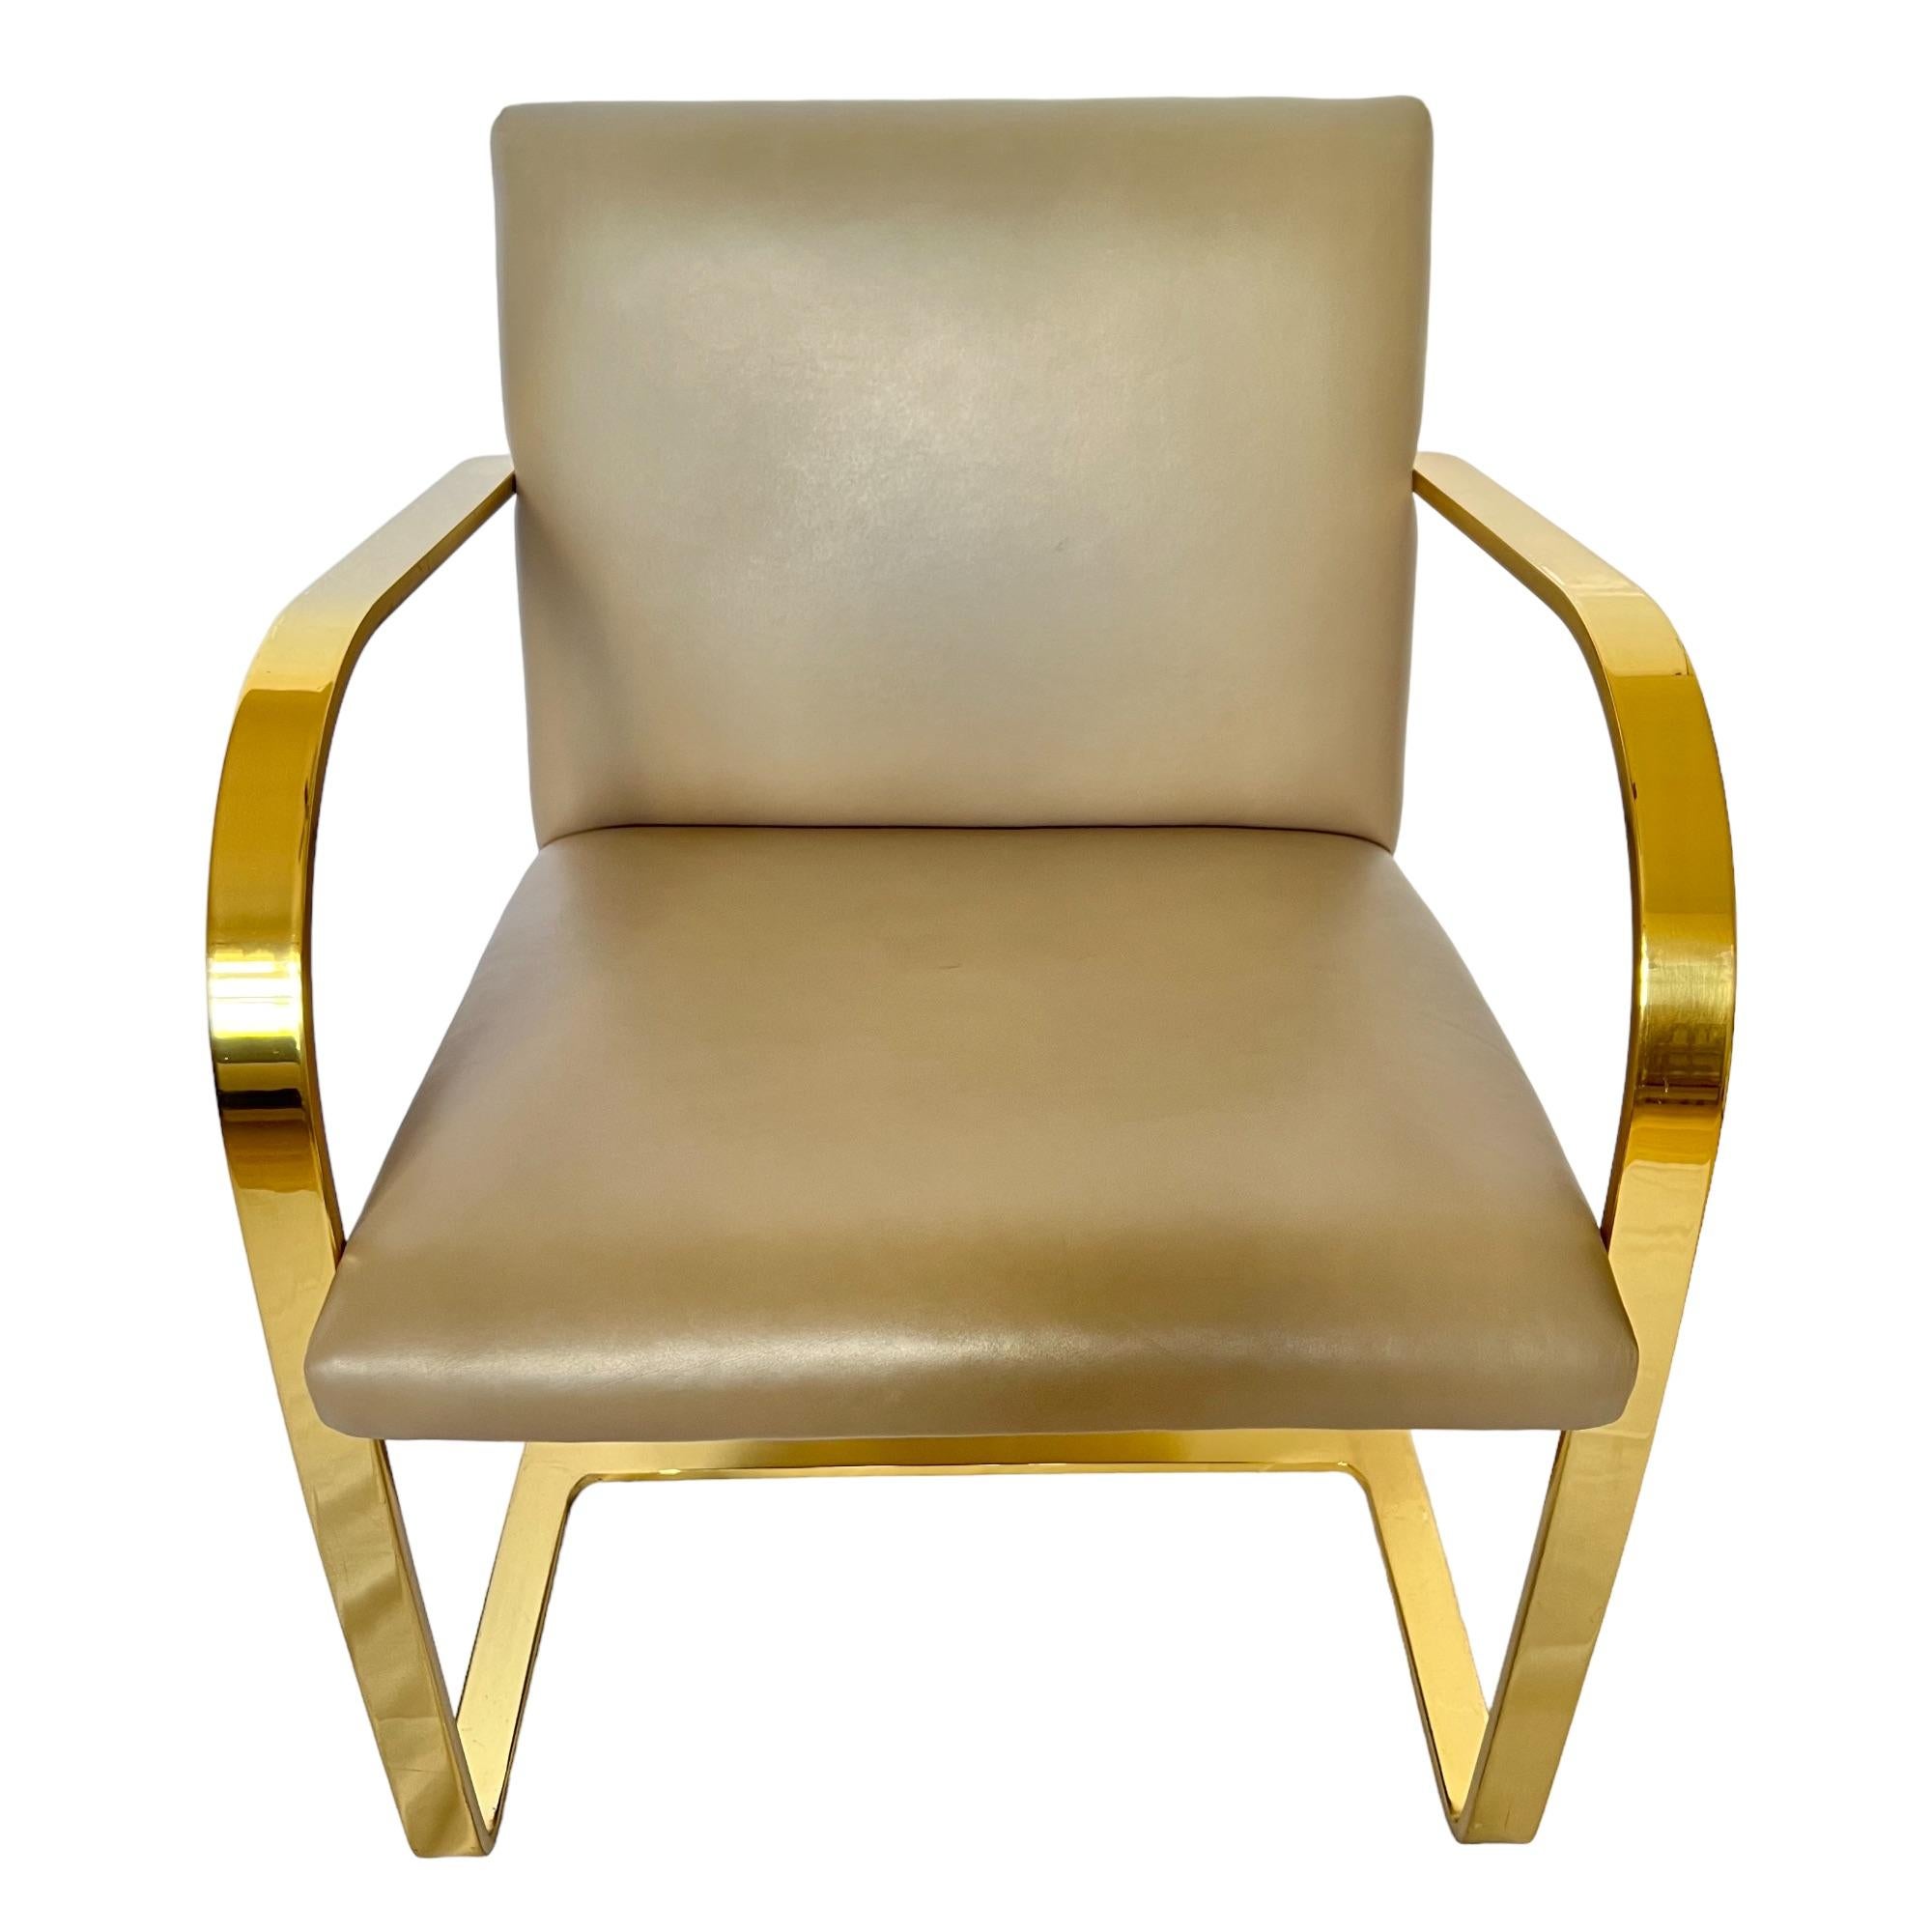 Laiton Mies Van Der Rohe Brno - Paire de chaises de bar plates en cuir et laiton doré